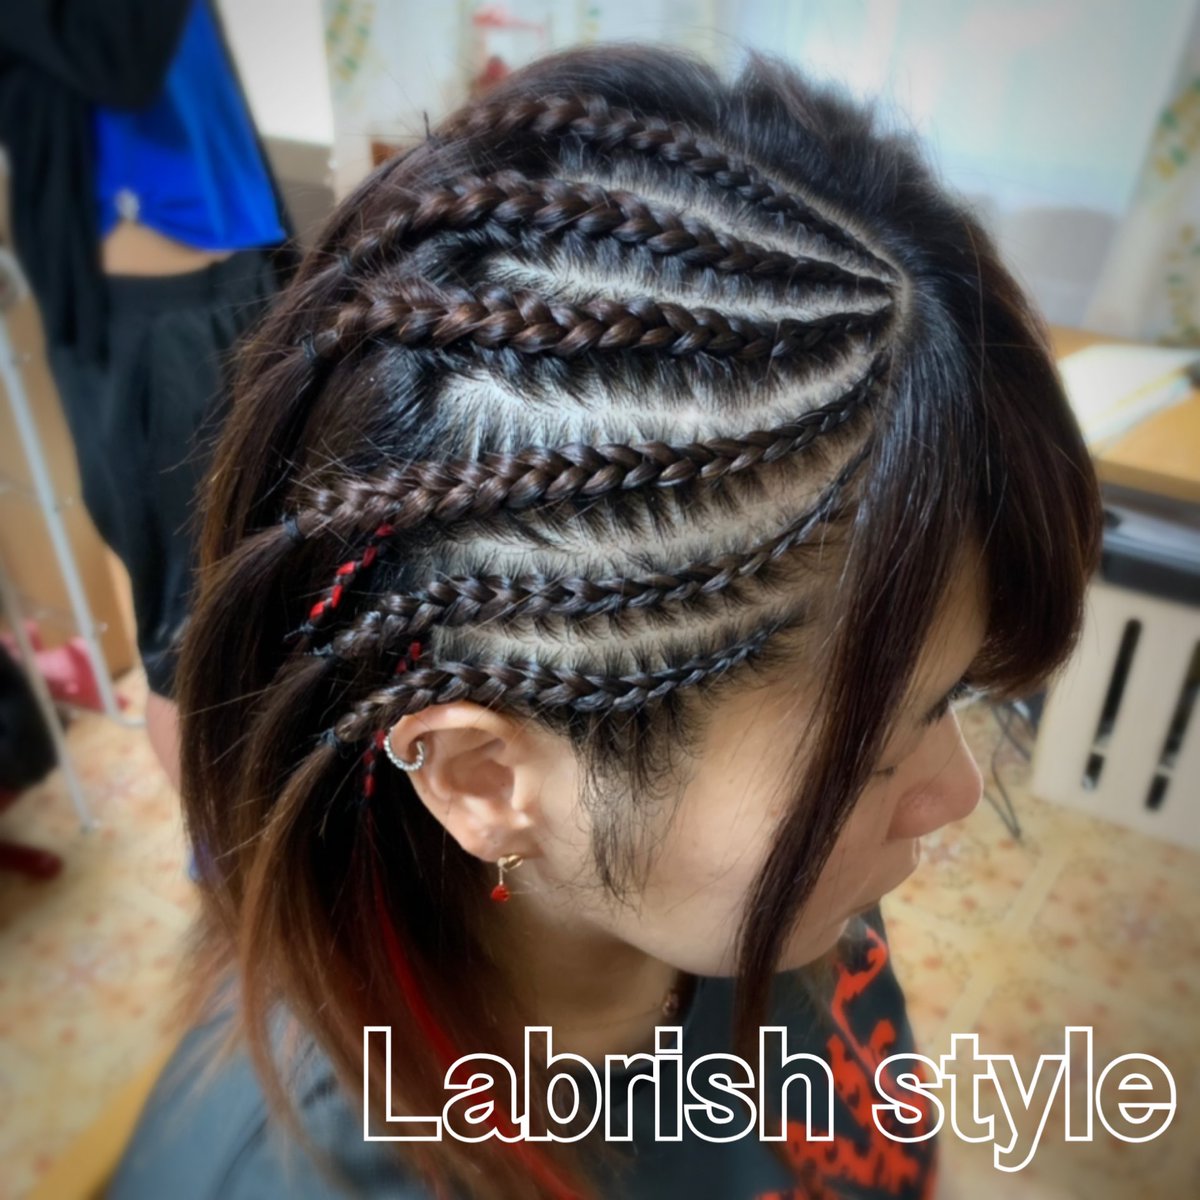 Labrish Style お友達同士で シンプルなサイドコーンロウ ありがとうございます Hair Blackhair Cornrow Braids Extension コーンロウ ブレイズ フルブレイズ ショートブレイズ エクステ ヘアスタイル ヘアアレンジ 特殊ヘア 派手髪